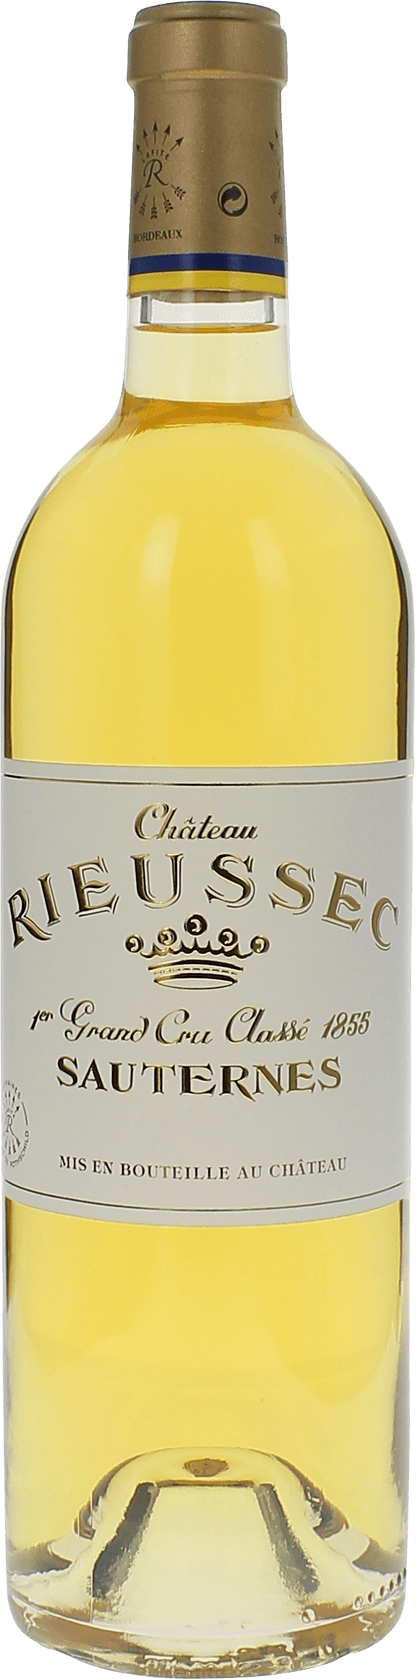 Rieussec 1989 1er cru Sauternes, Bordeaux blanc